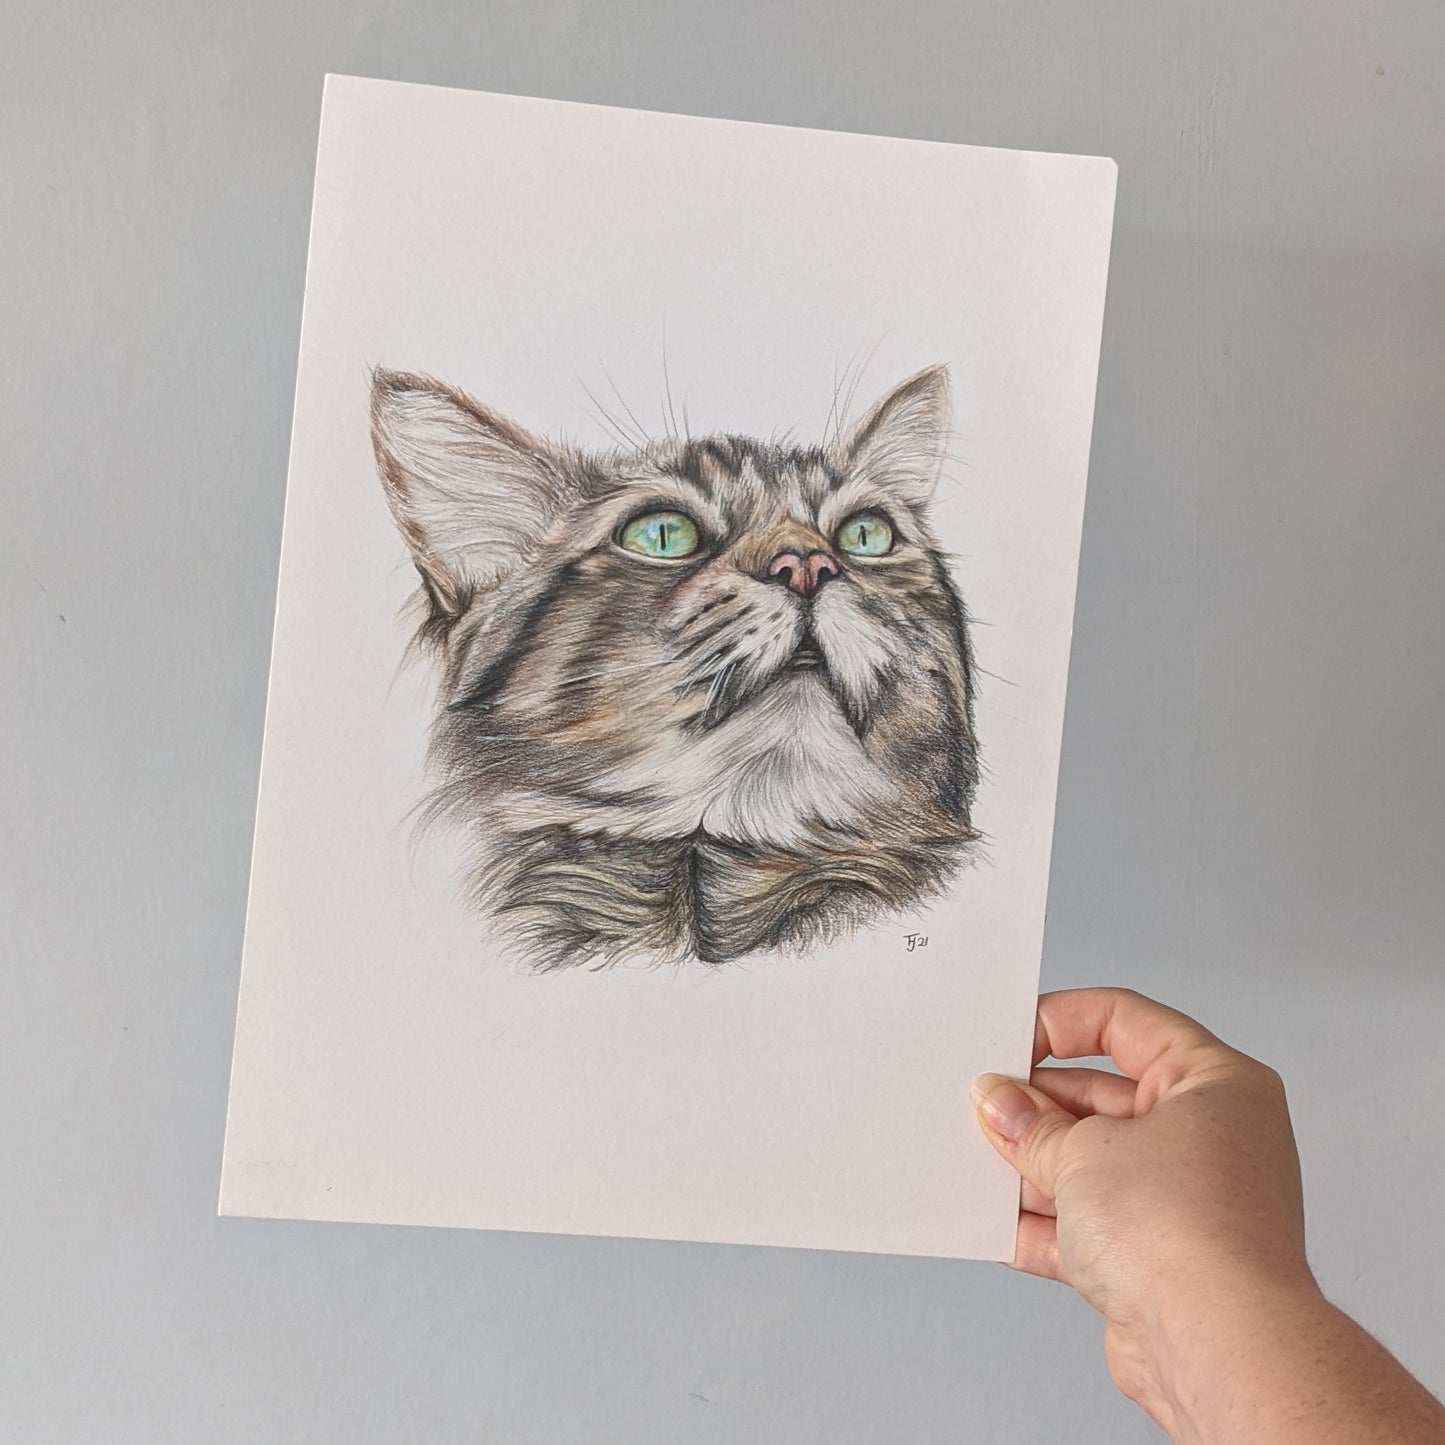 Original pencil drawing of a Tabby Cat "Bonny", A4